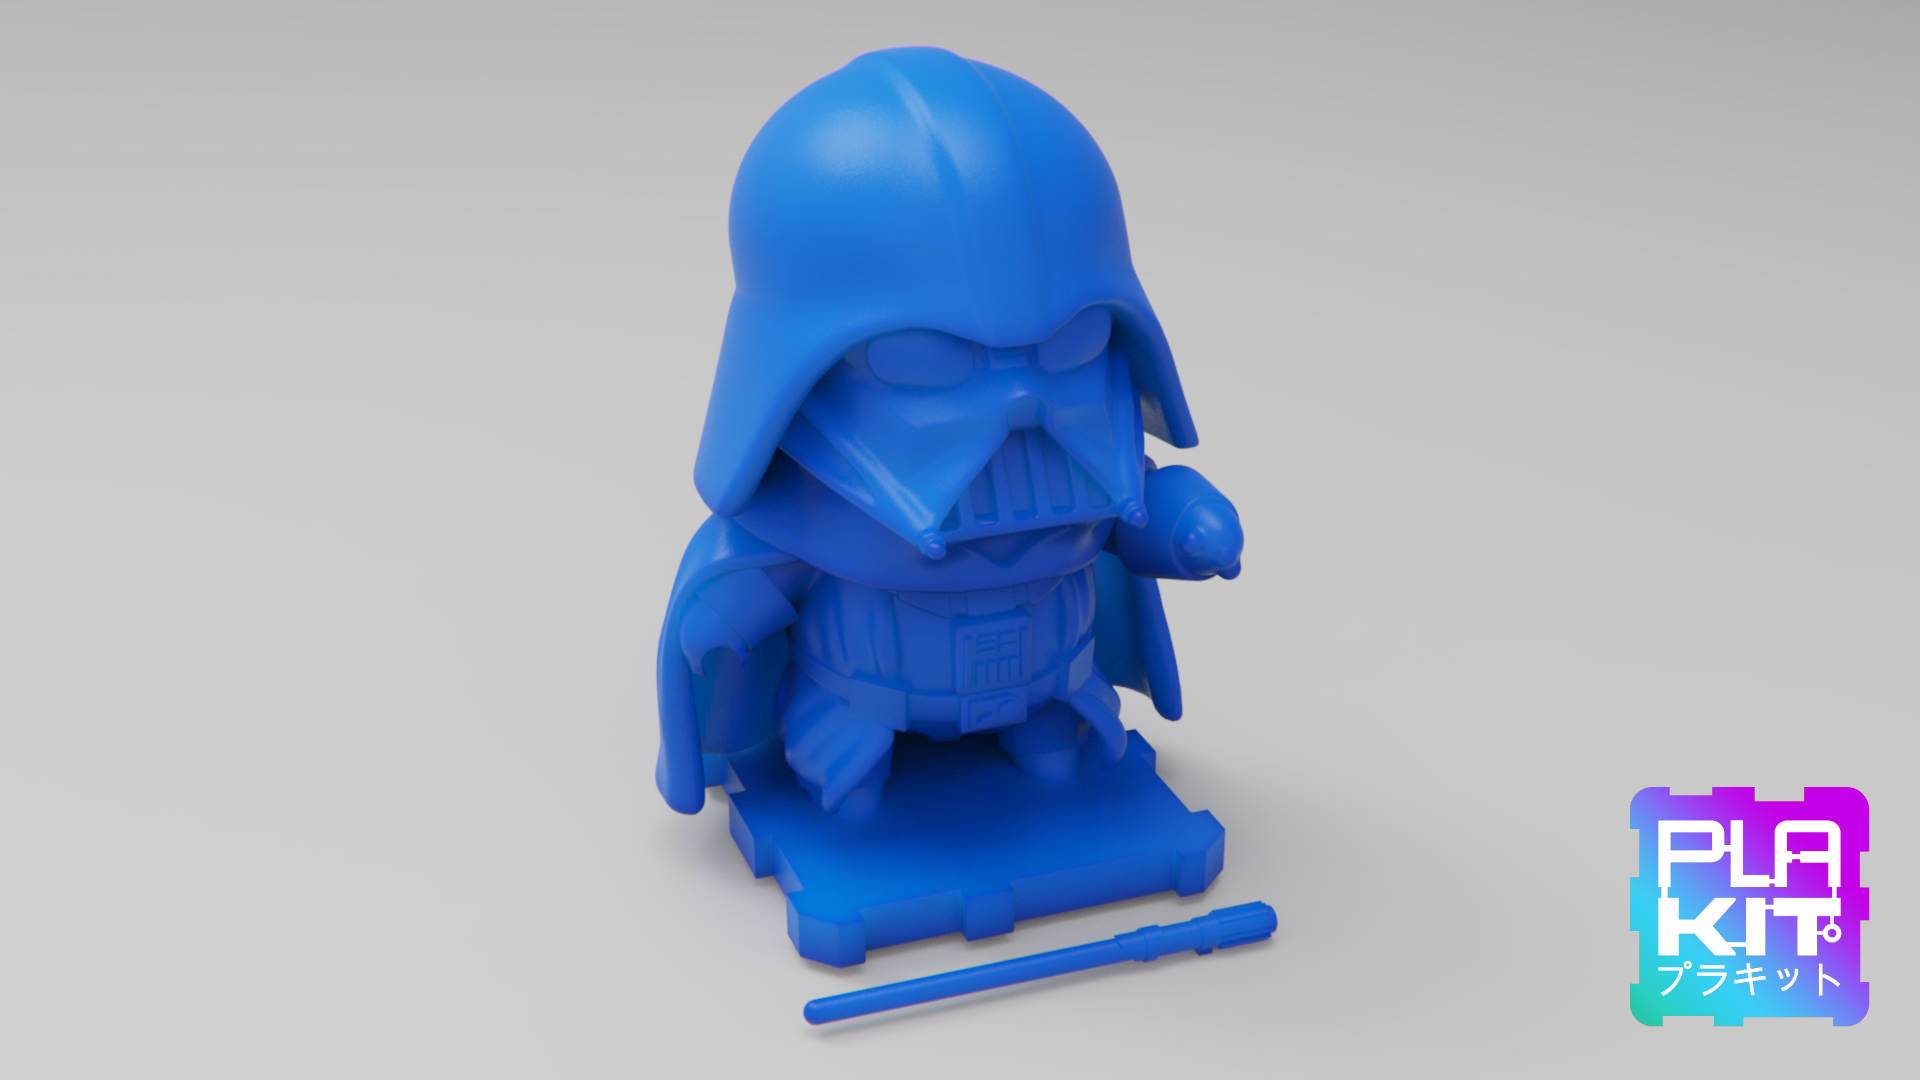 DARTHVADER1b.png Download free STL file Star Wars DARTH VADER! • 3D printing model, purakito